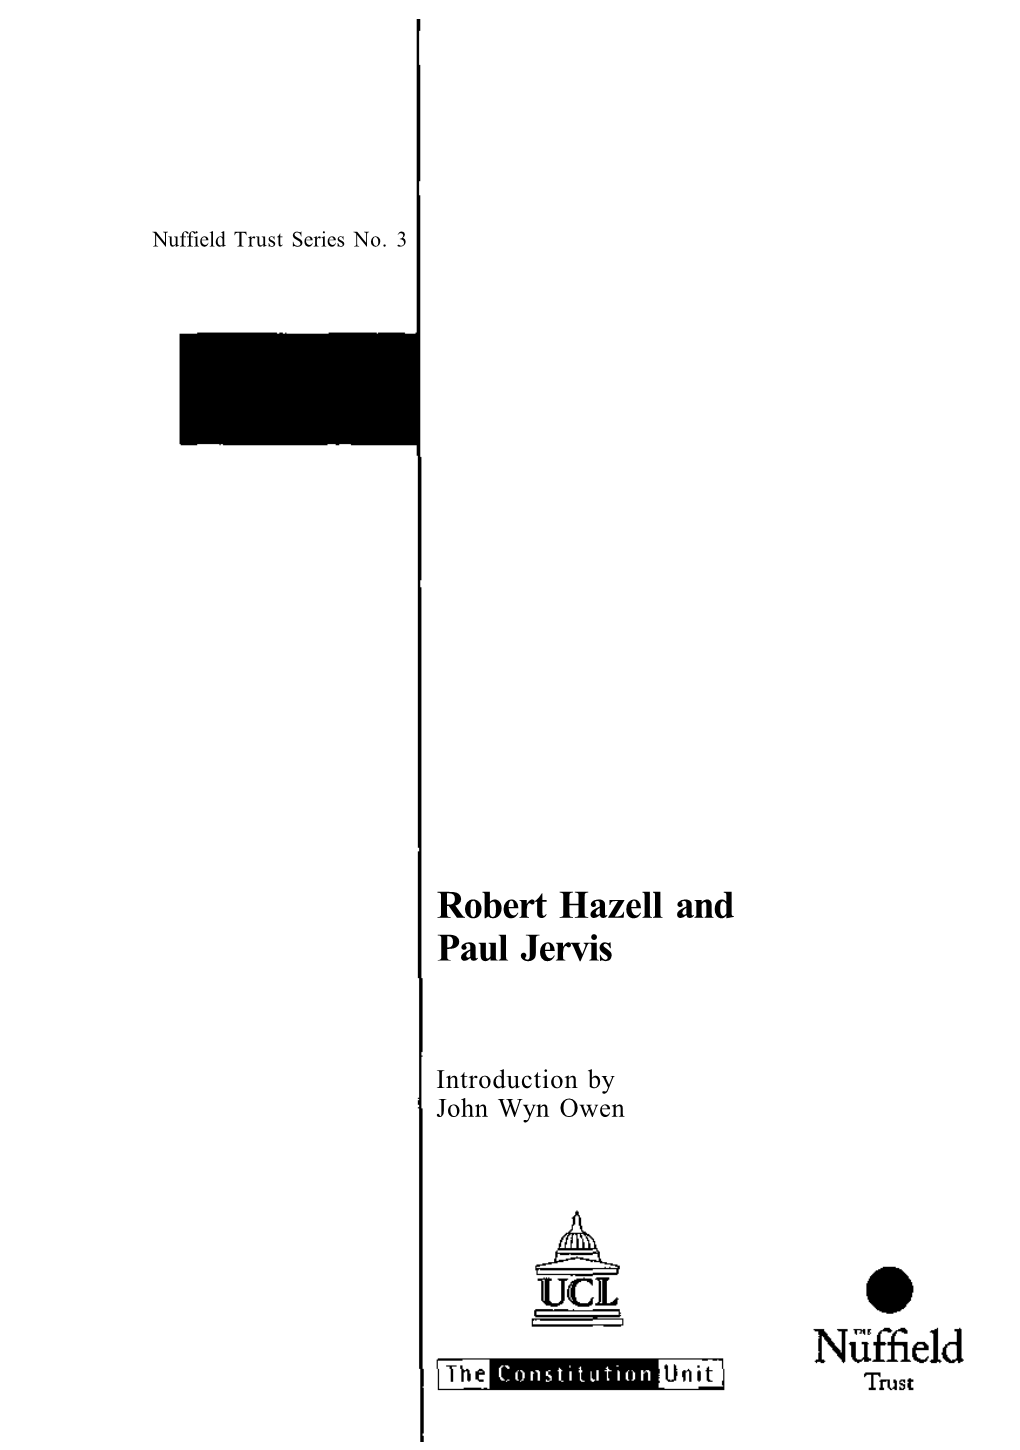 Robert Hazell and Paul Jervis